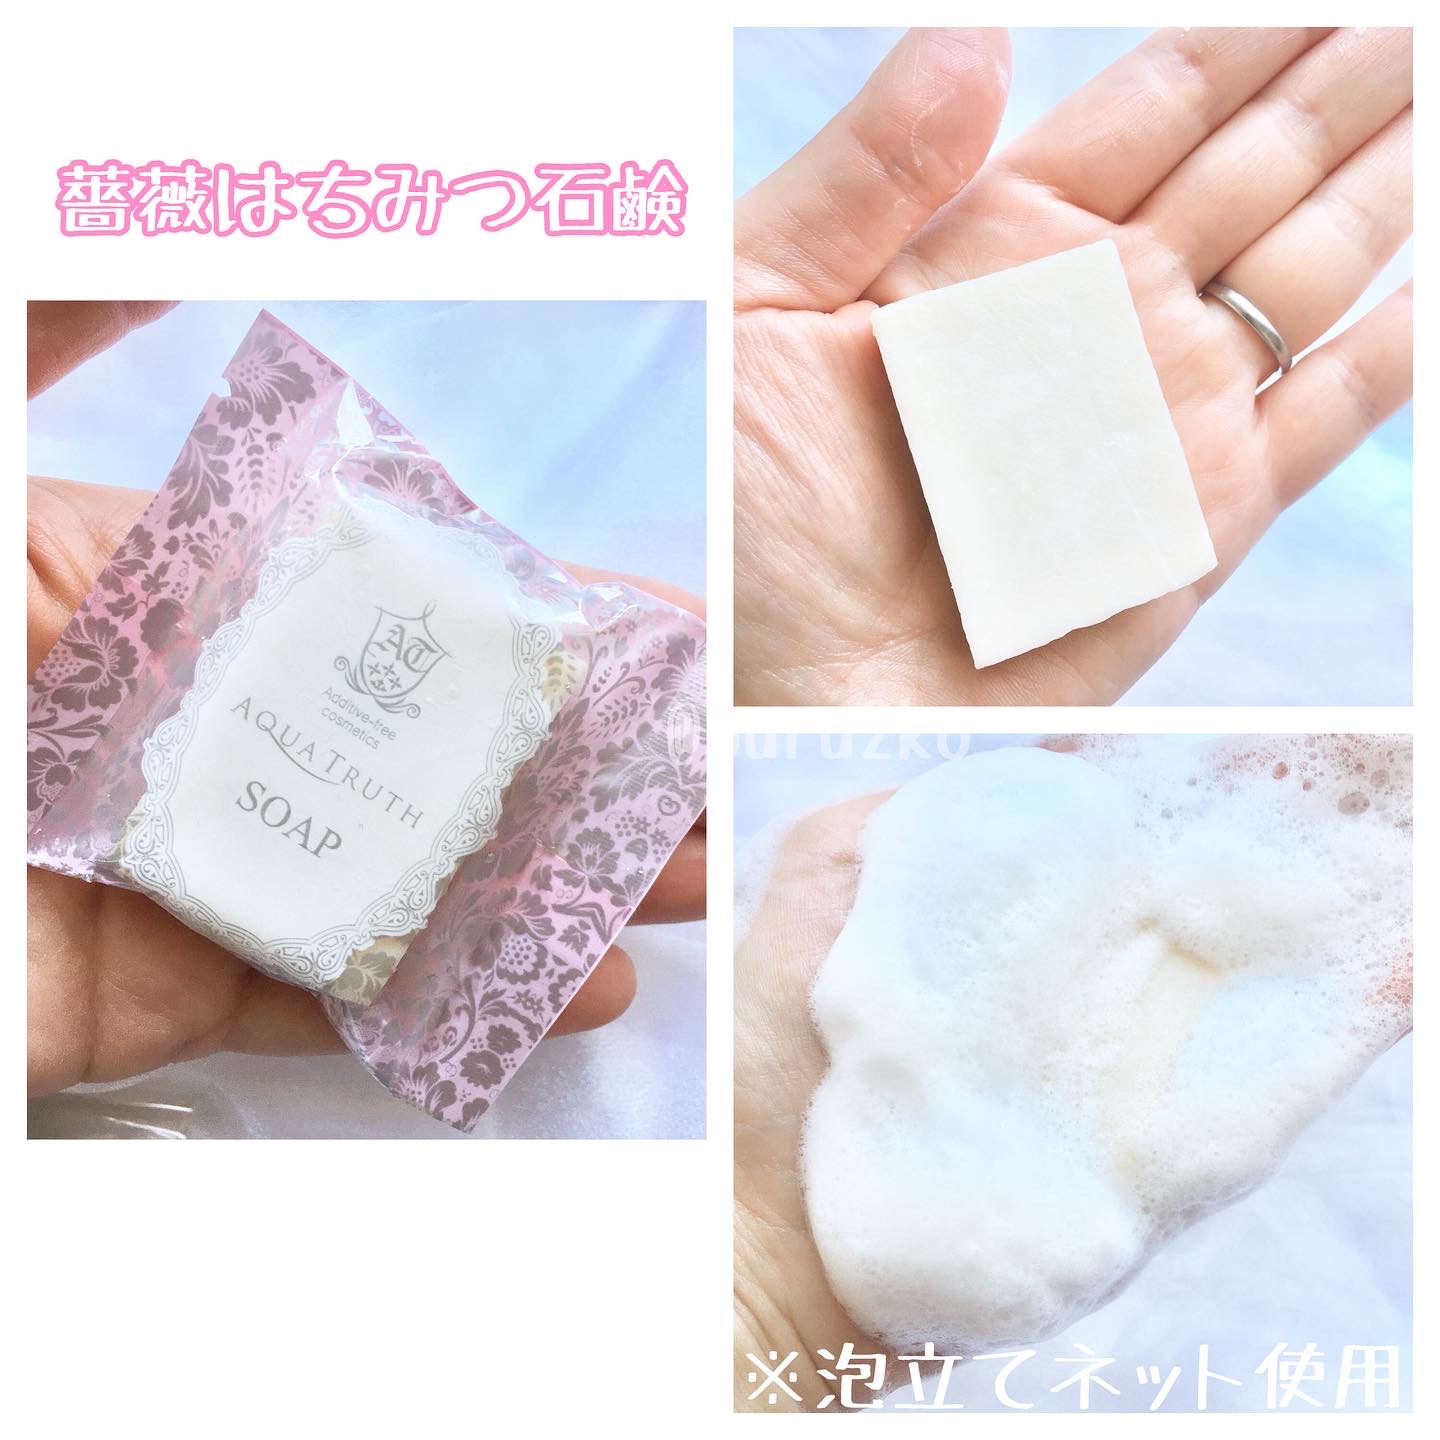 麗凍化粧品(Reitou Cosme) トライアルセットを使ったぶるどっくさんのクチコミ画像5